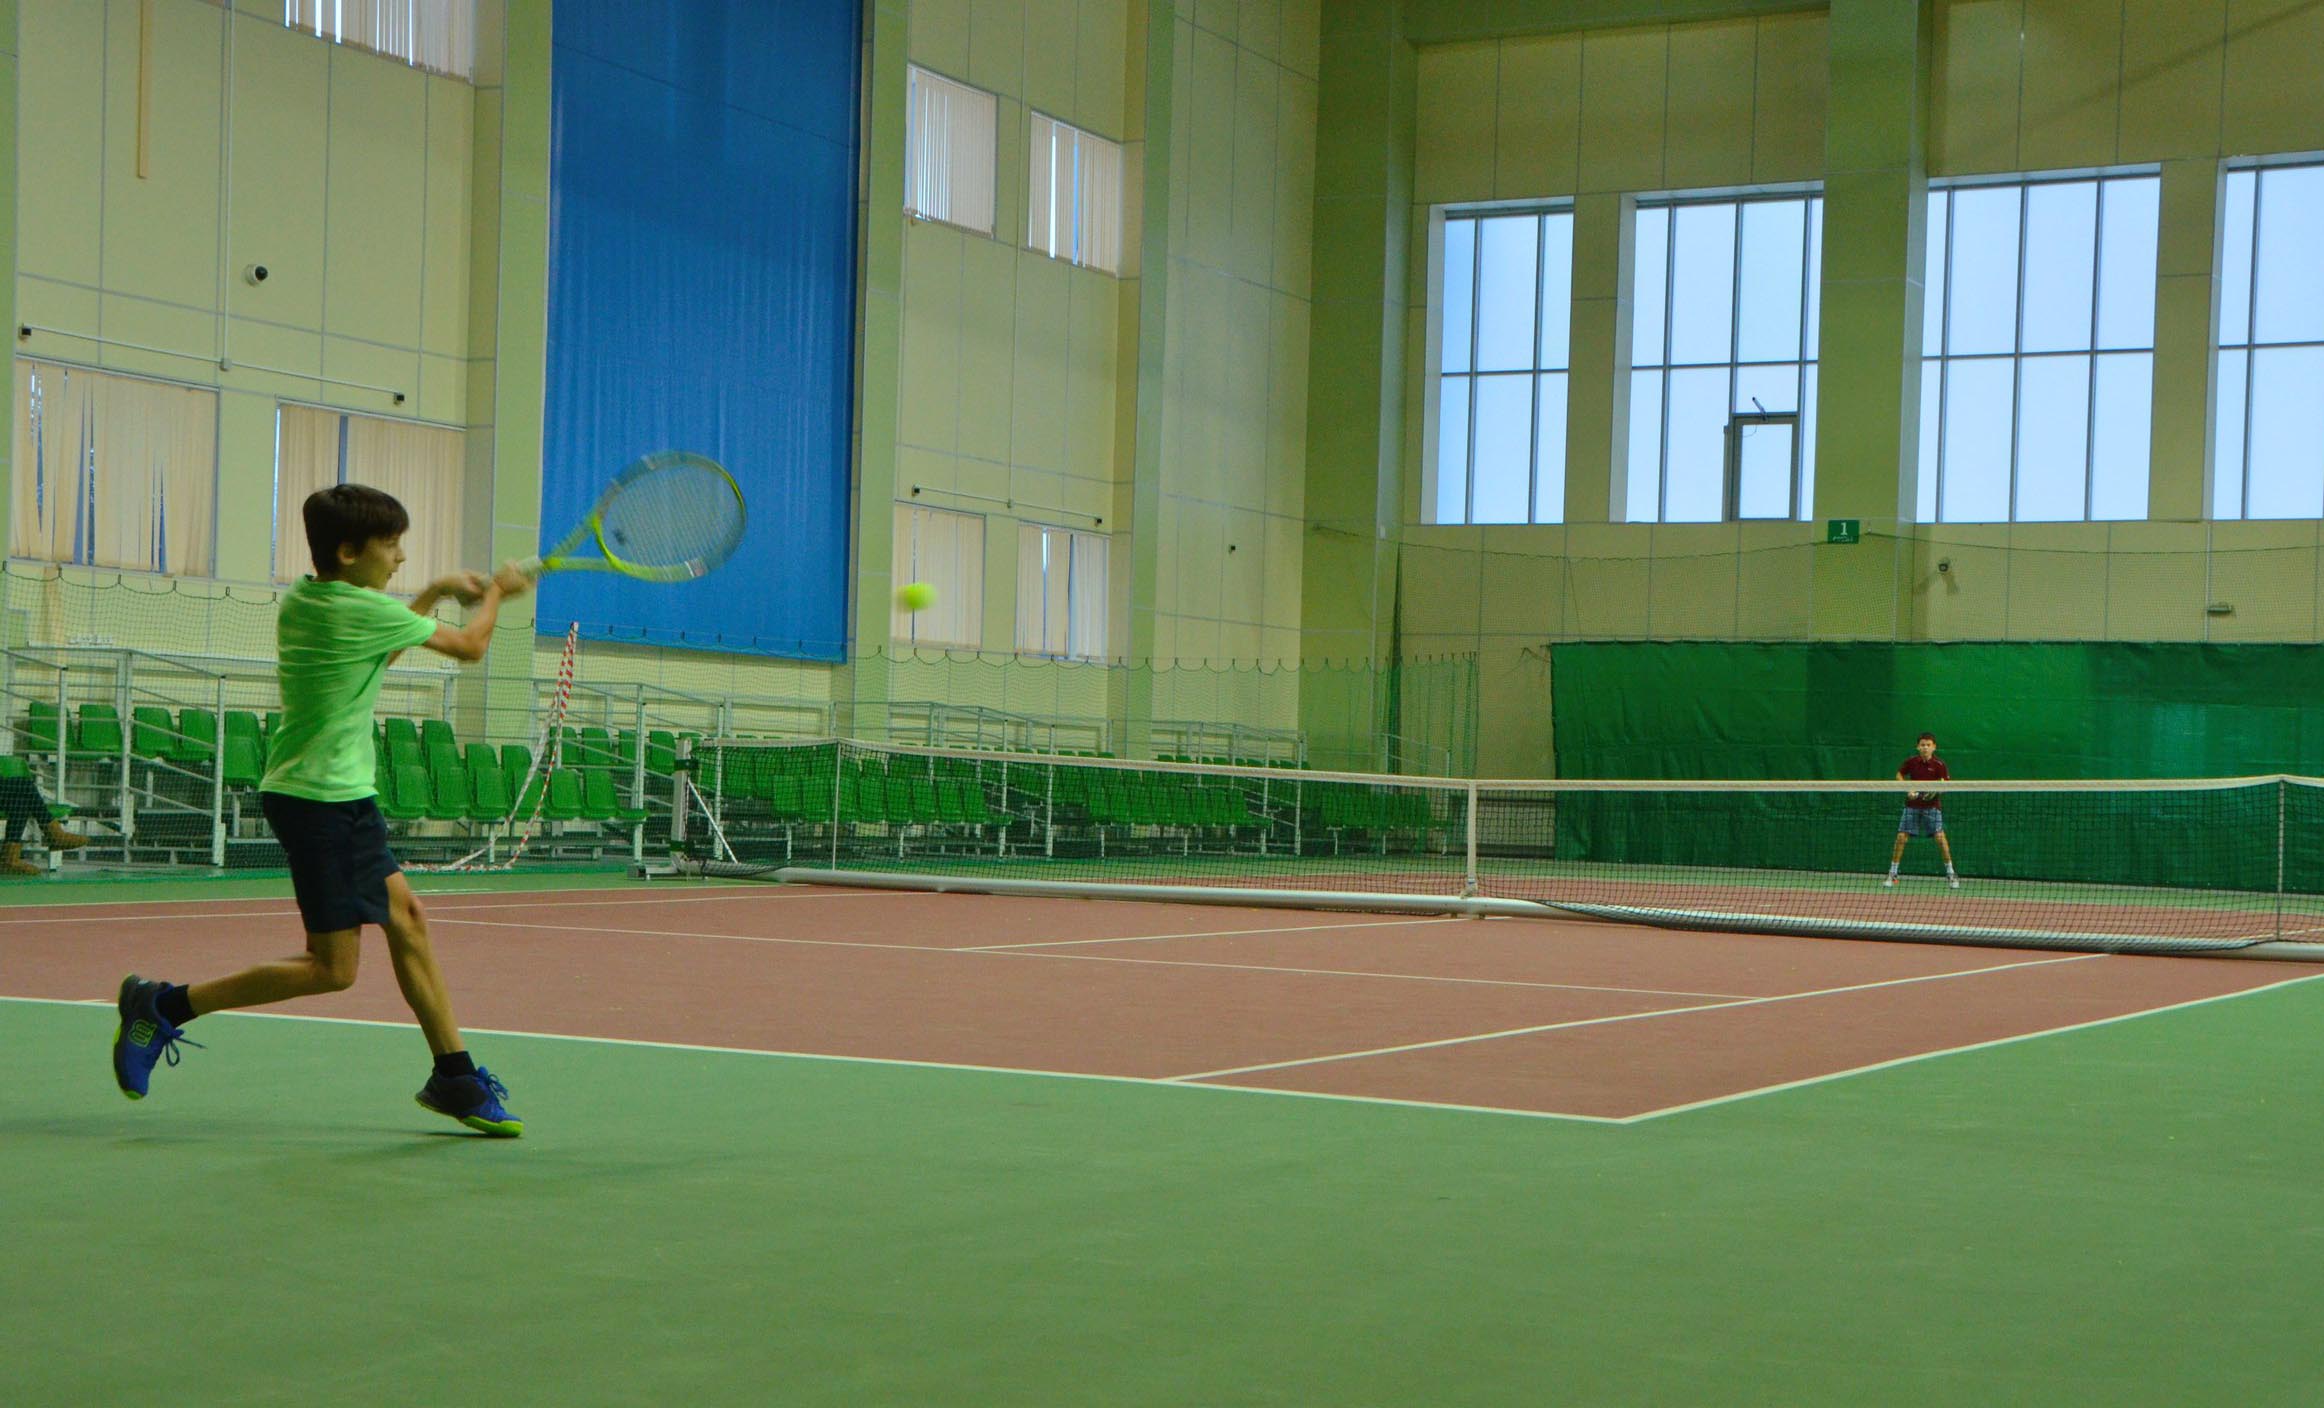 Известны первые результаты  командного  первенства  России по теннису до 15 лет  в  г. Тольятти!